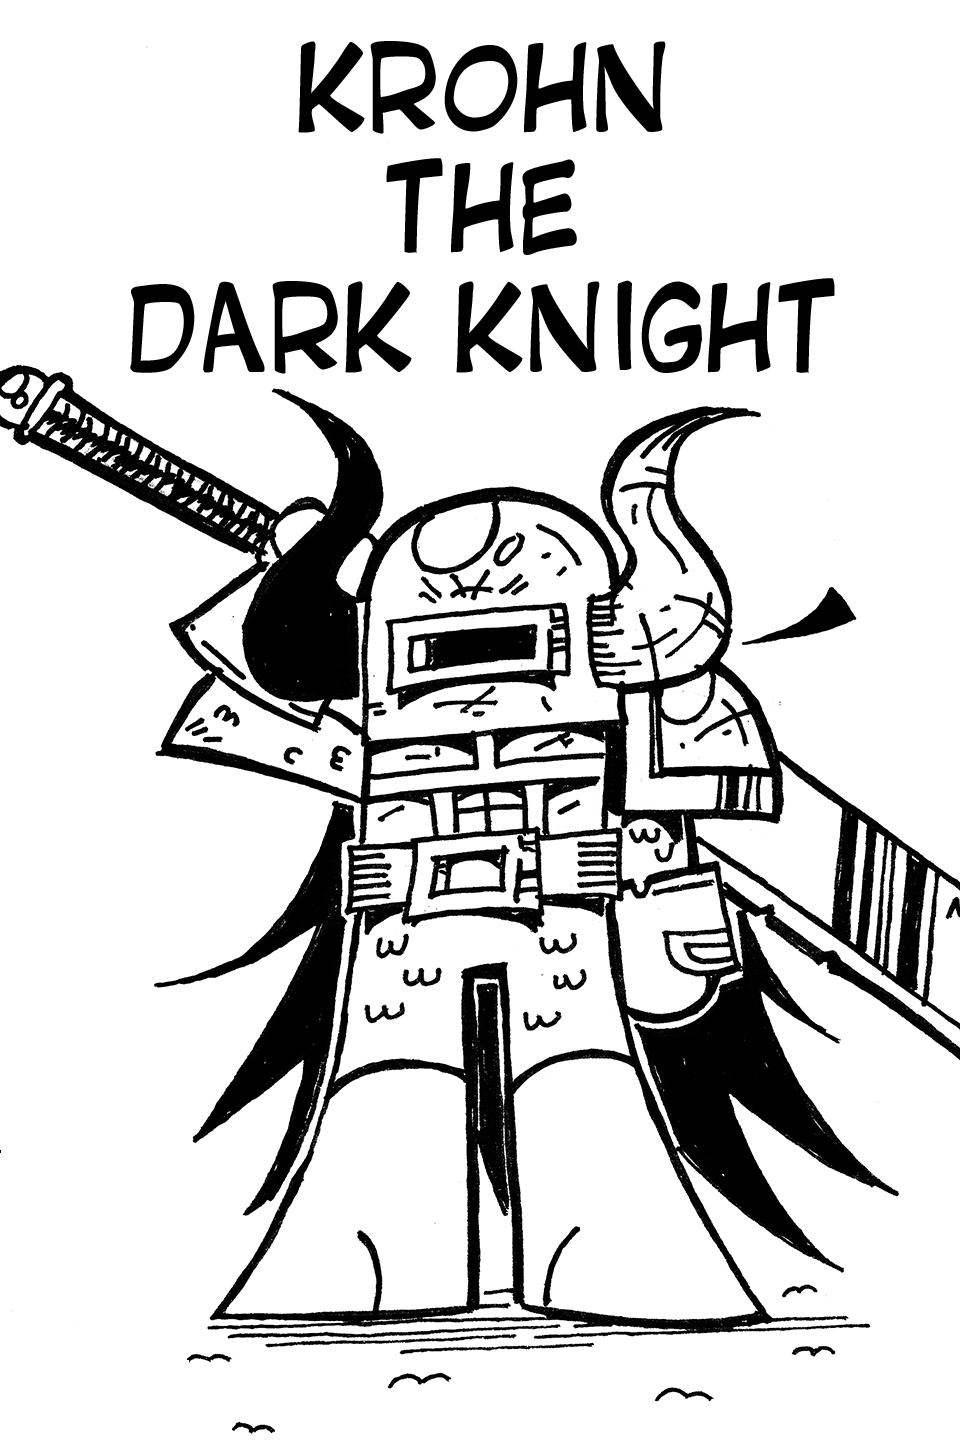 Krohn the Dark Knight.